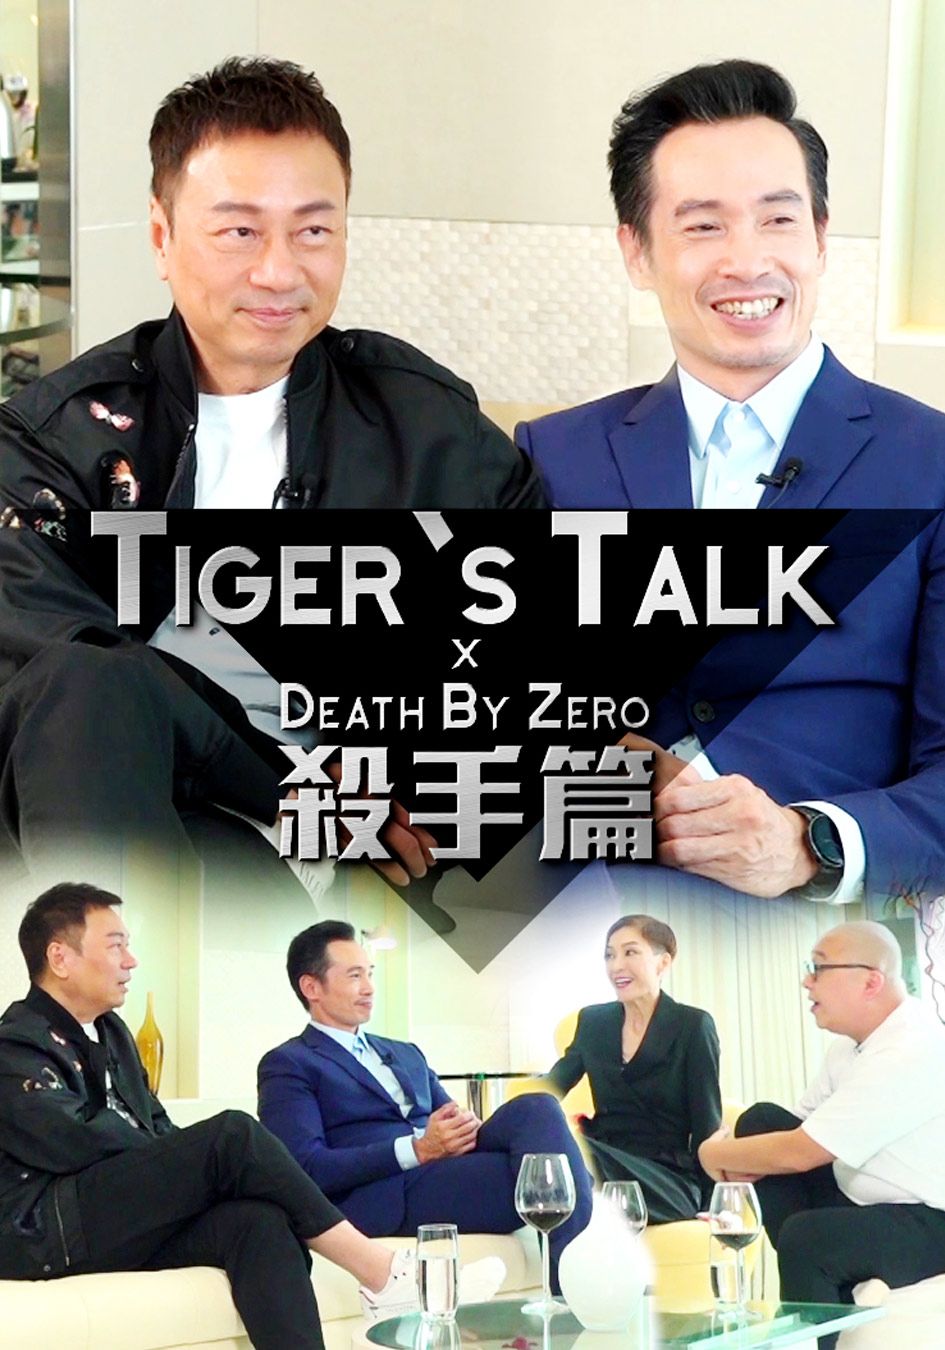 Tiger's Talk之殺手篇-Tiger's Talk x Death By Zero